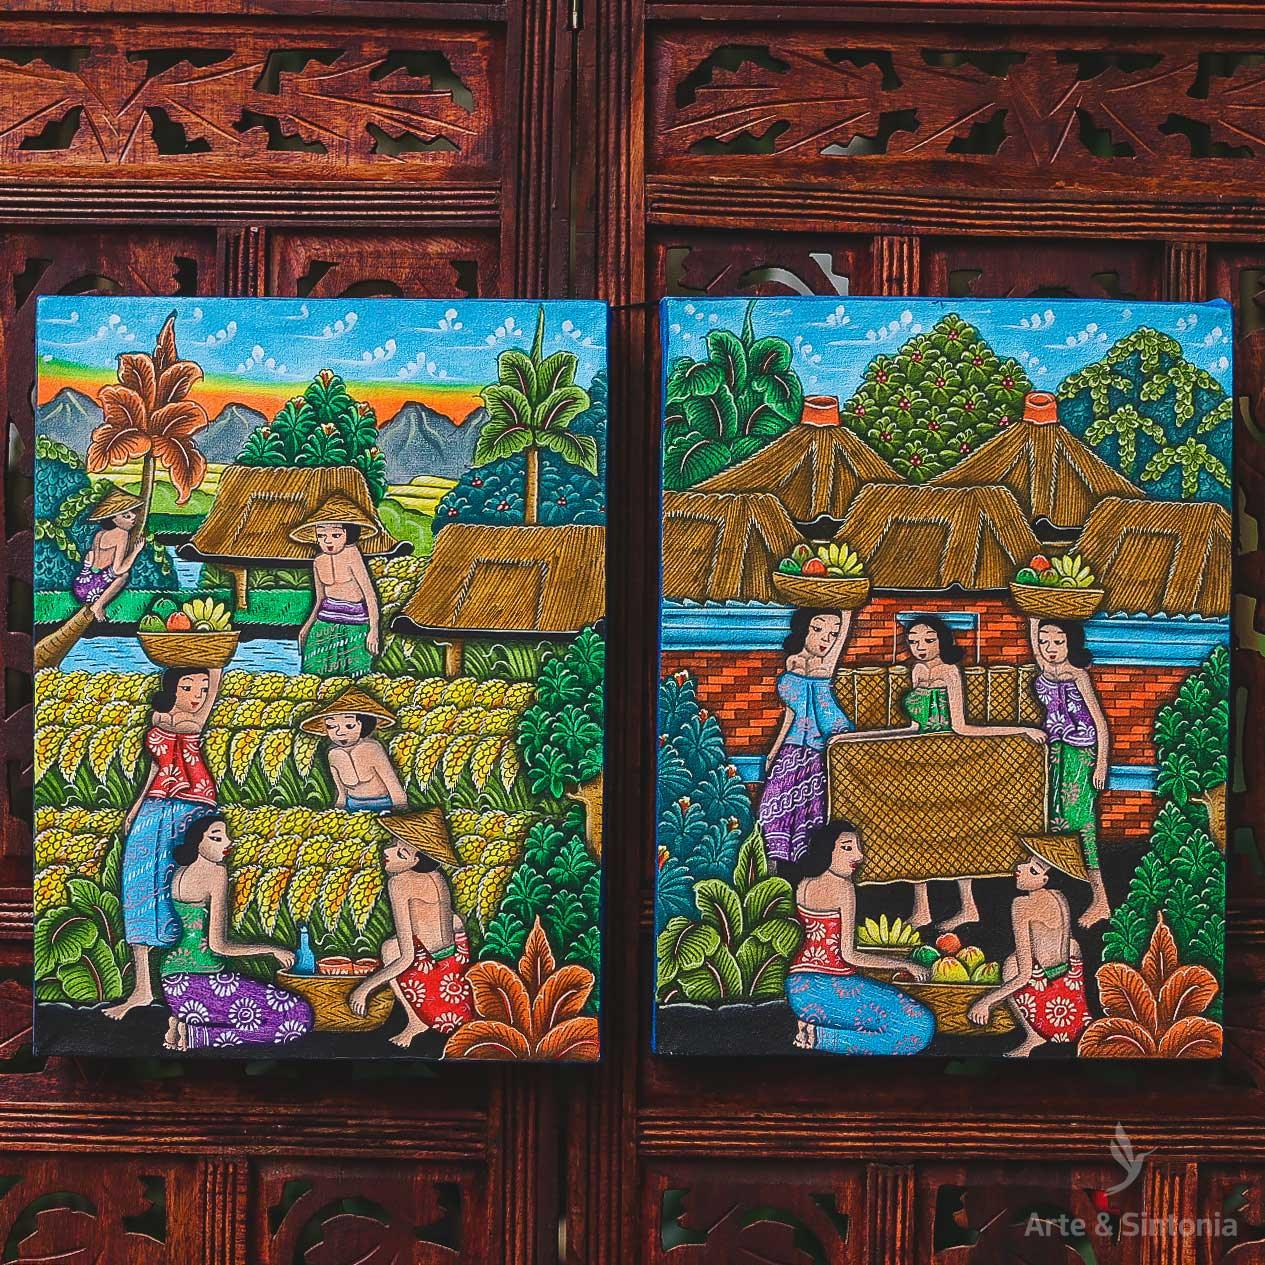 DA9-212 tela pintura decorativa trabalhadores cultura balinesa bali produto artesanal home decor decoracao balinesa parede artesintonia 5